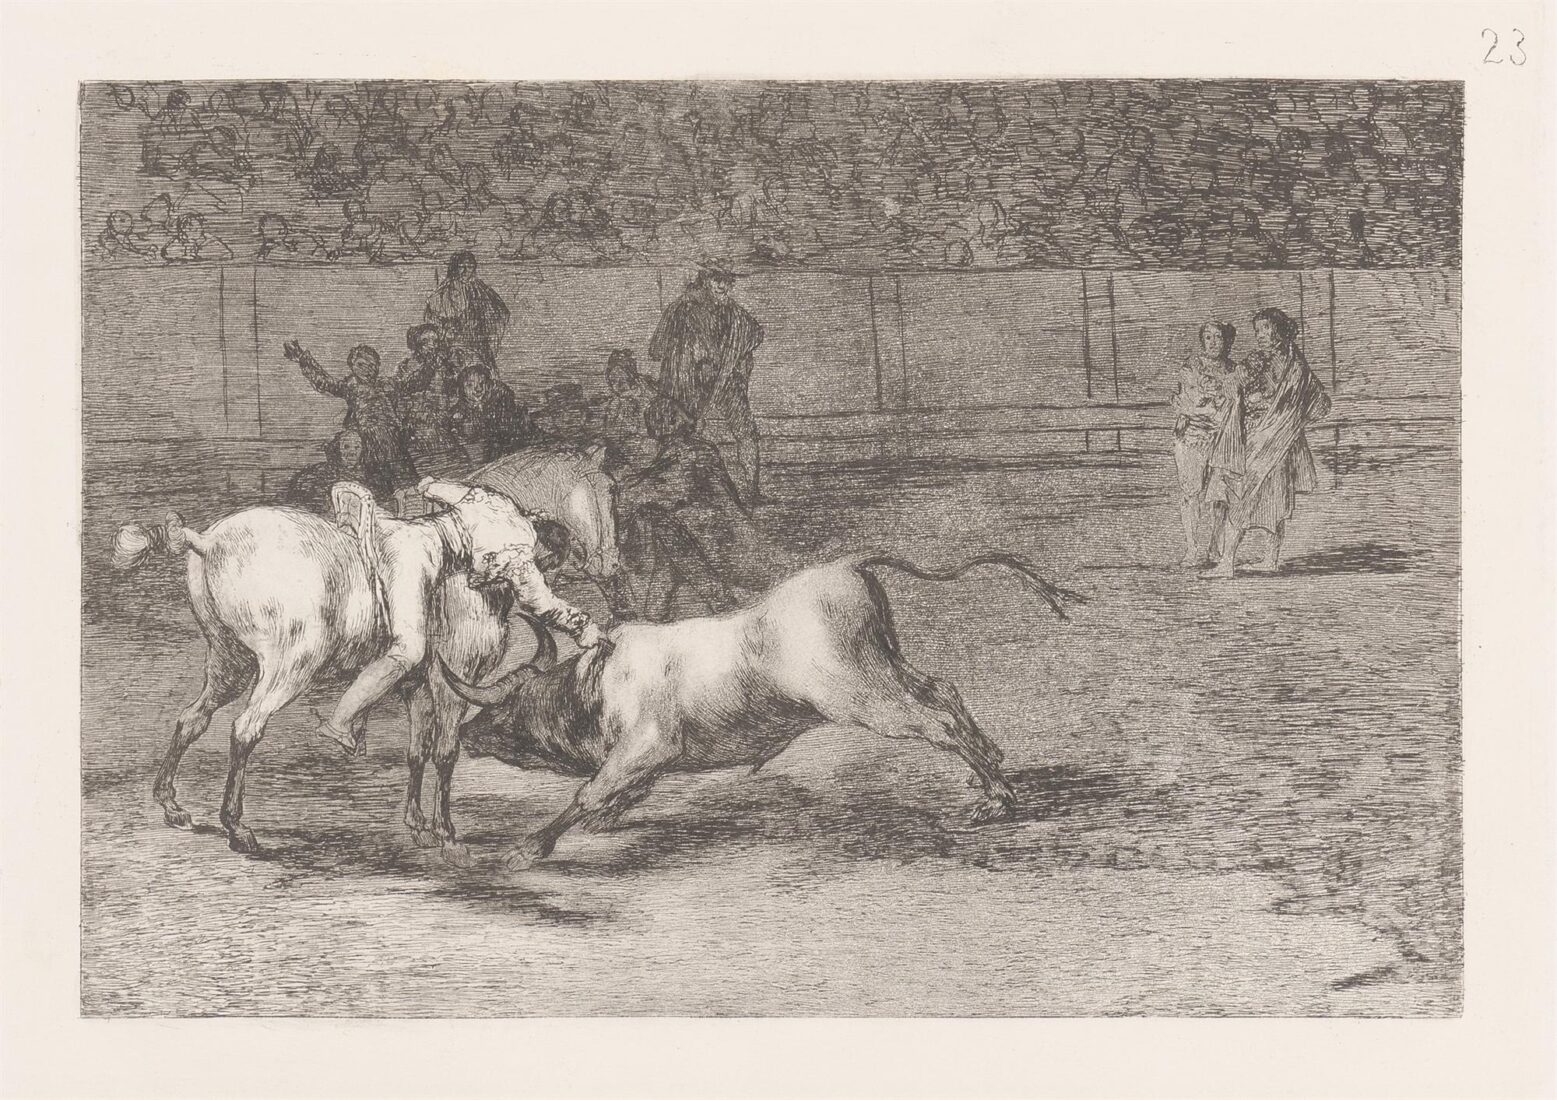 Mariano Ceballos, alias the Indian, kills the bull from his horse. (Mariano Ceballos, alias el Indio, mata el toro desde su caballo) - Goya y Lucientes Francisco